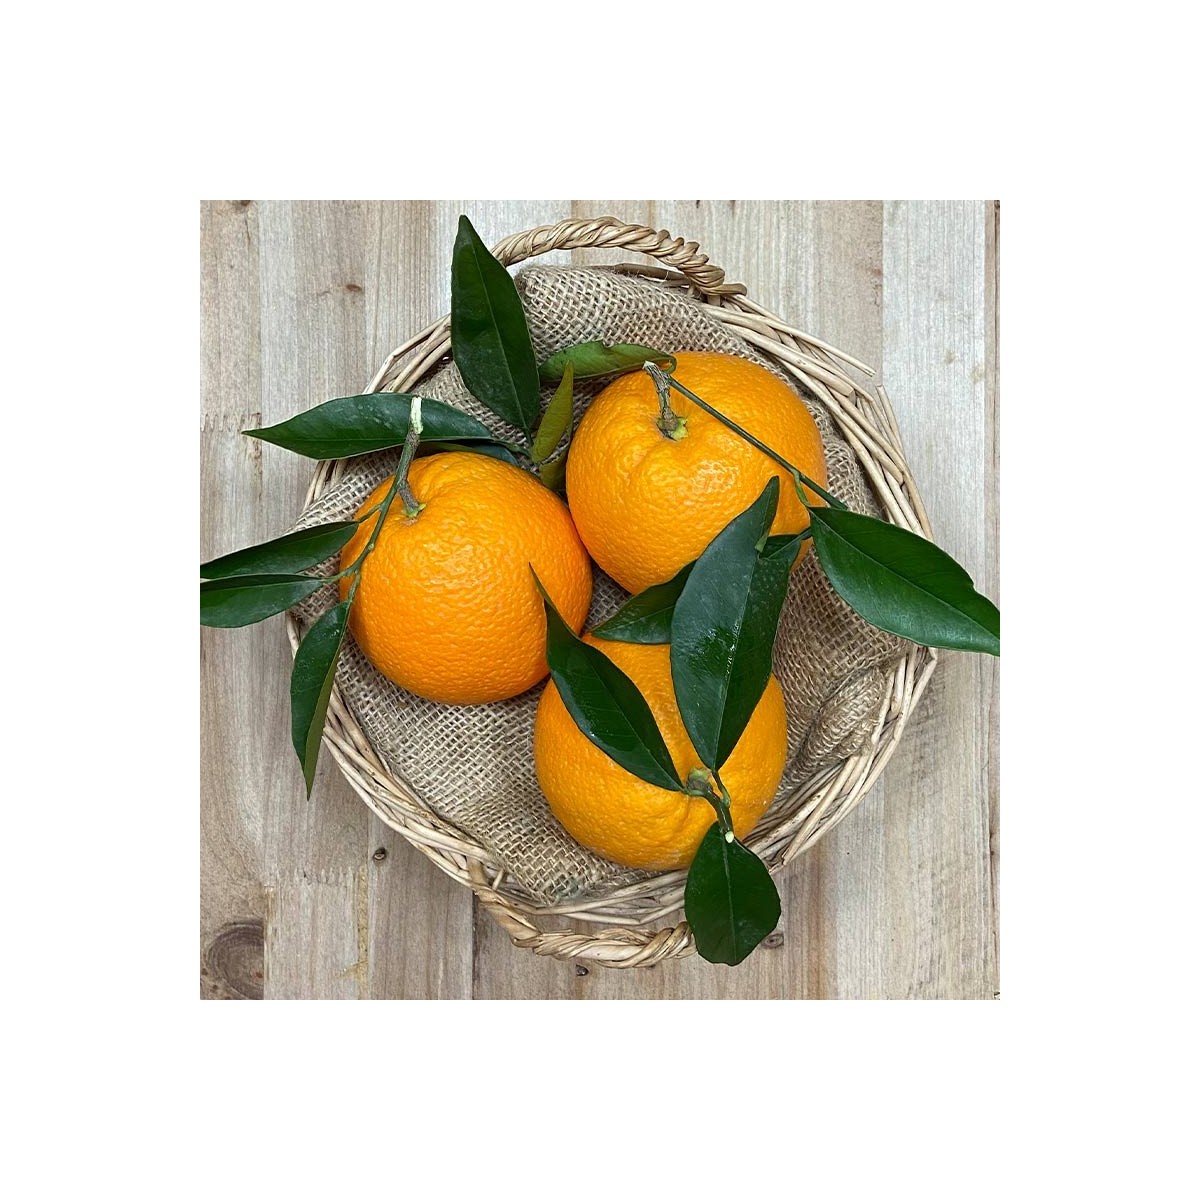 Naranja Mesa - Naranjas, Limones y Otros Cítricos -1- Lo mejor de la fruta